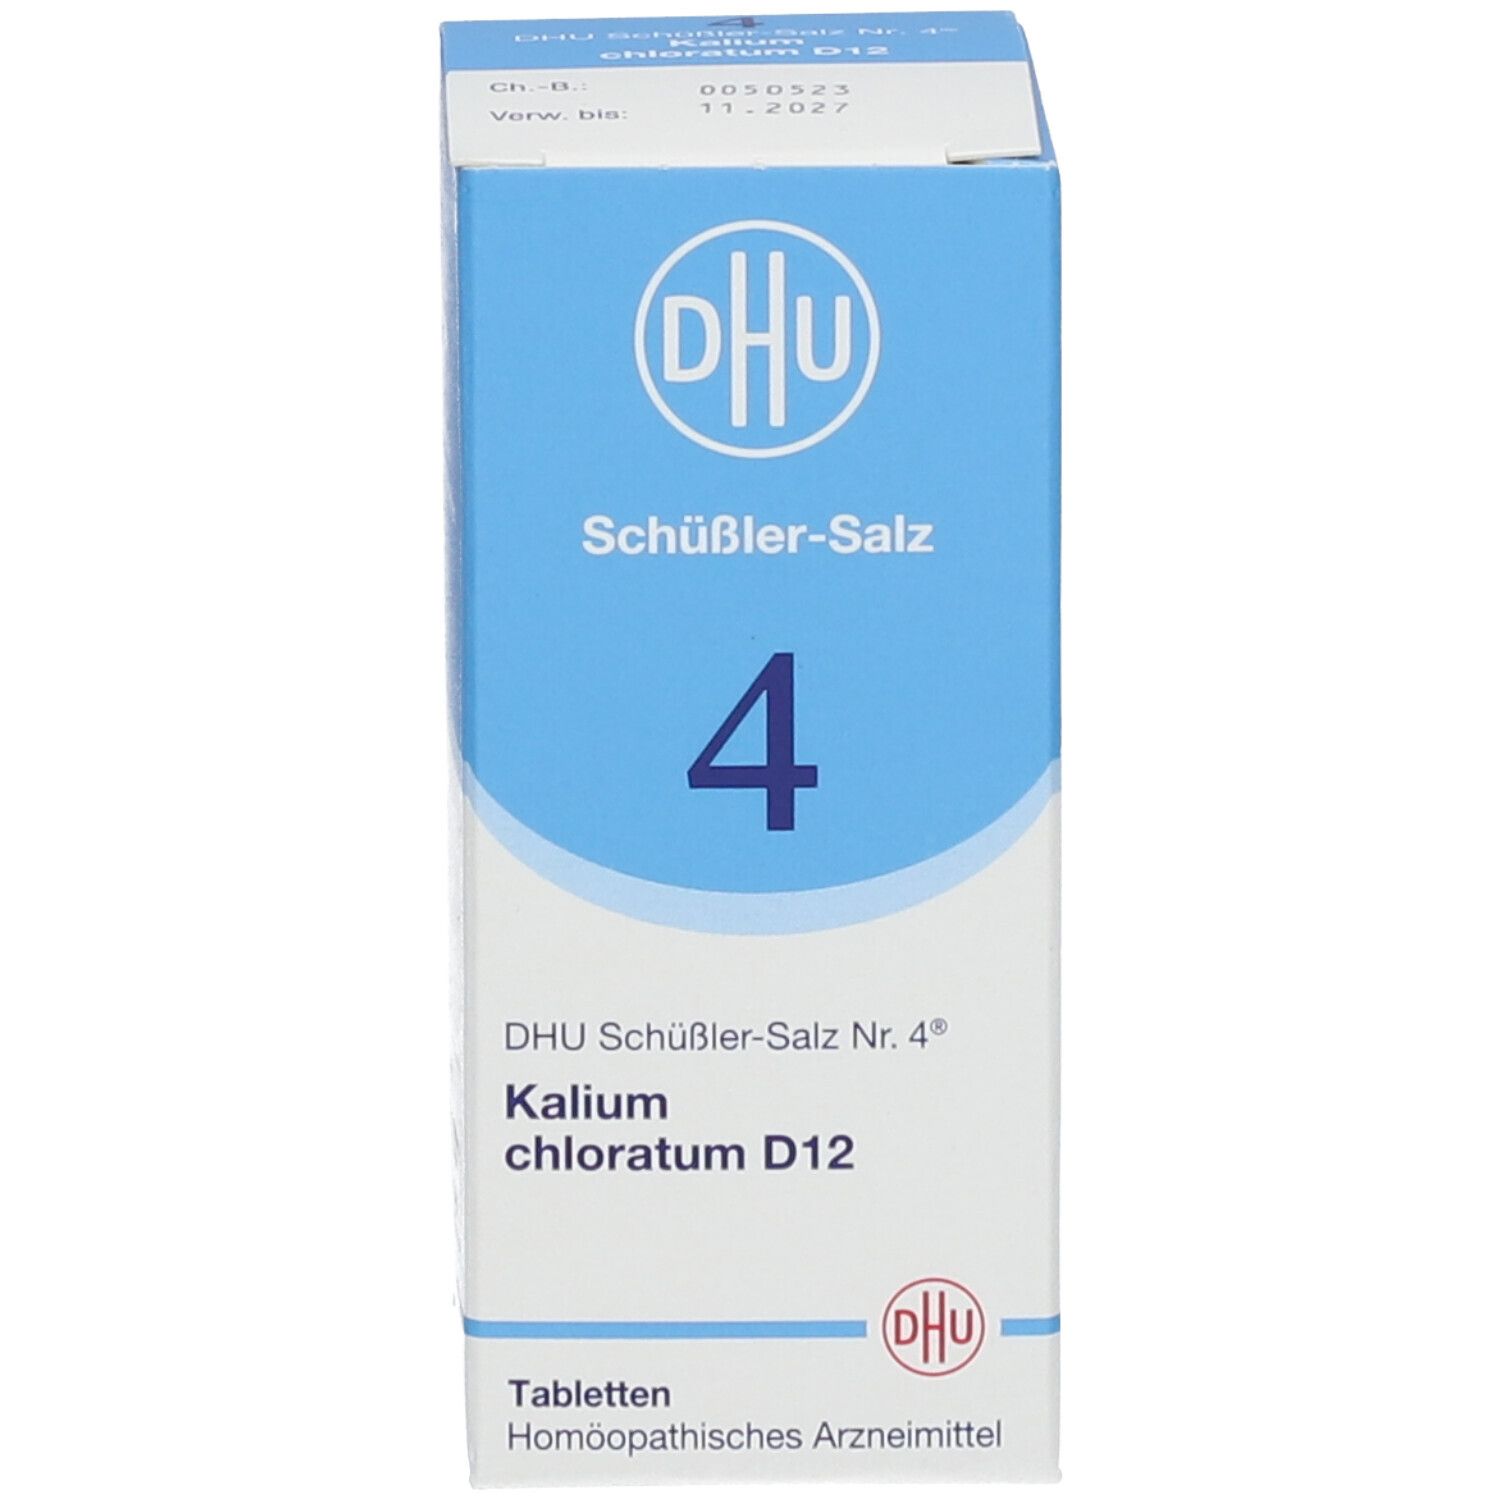 DHU Schüßler-Salz Nr. 4® Kalium chloratum D12